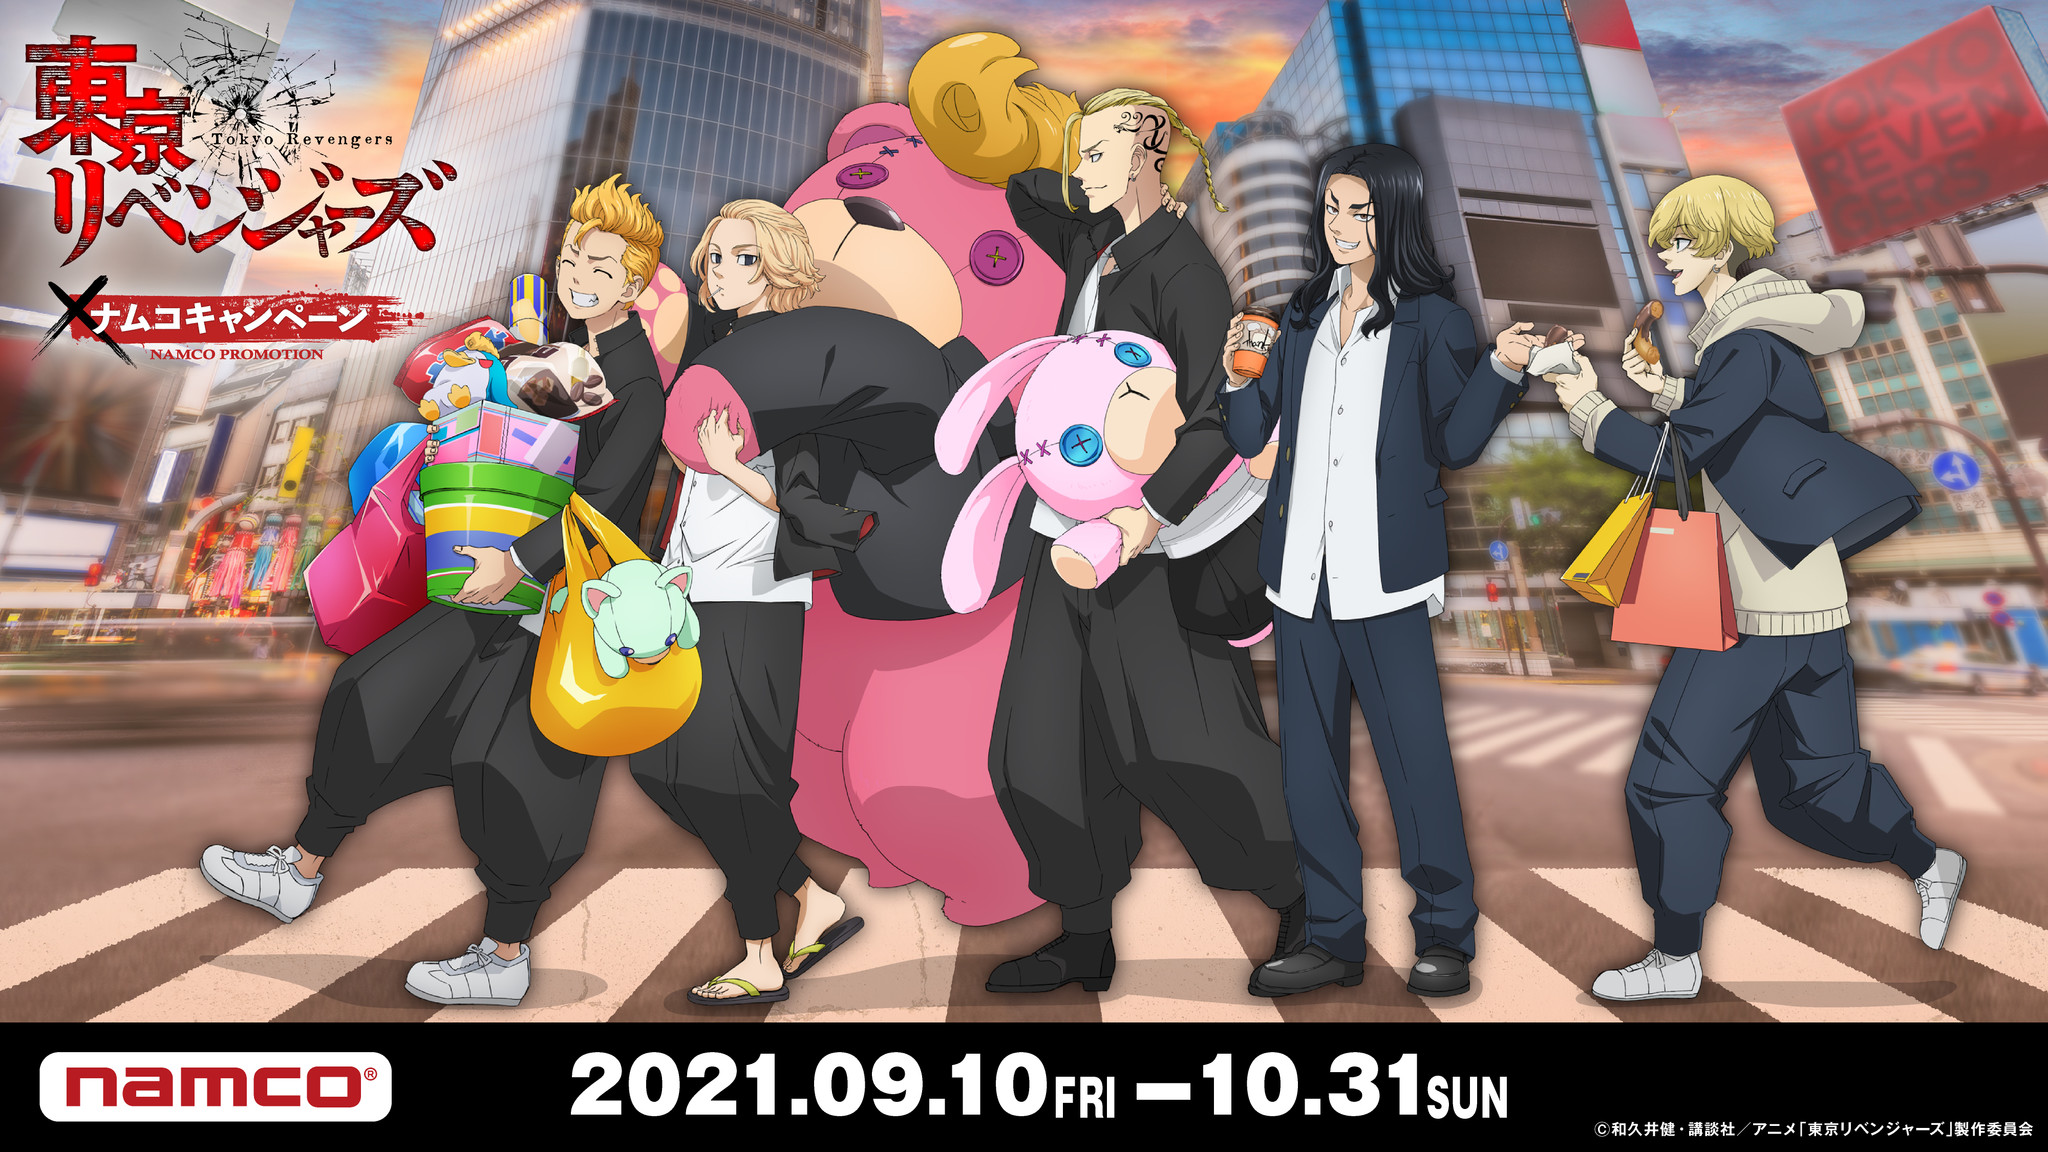 Tvアニメ 東京リベンジャーズ ナムコのコラボキャンペーンが9月10日 金 より開催 限定イラスト を使用したアミューズメント景品が続々登場 バンダイナムコアミューズメントのプレスリリース